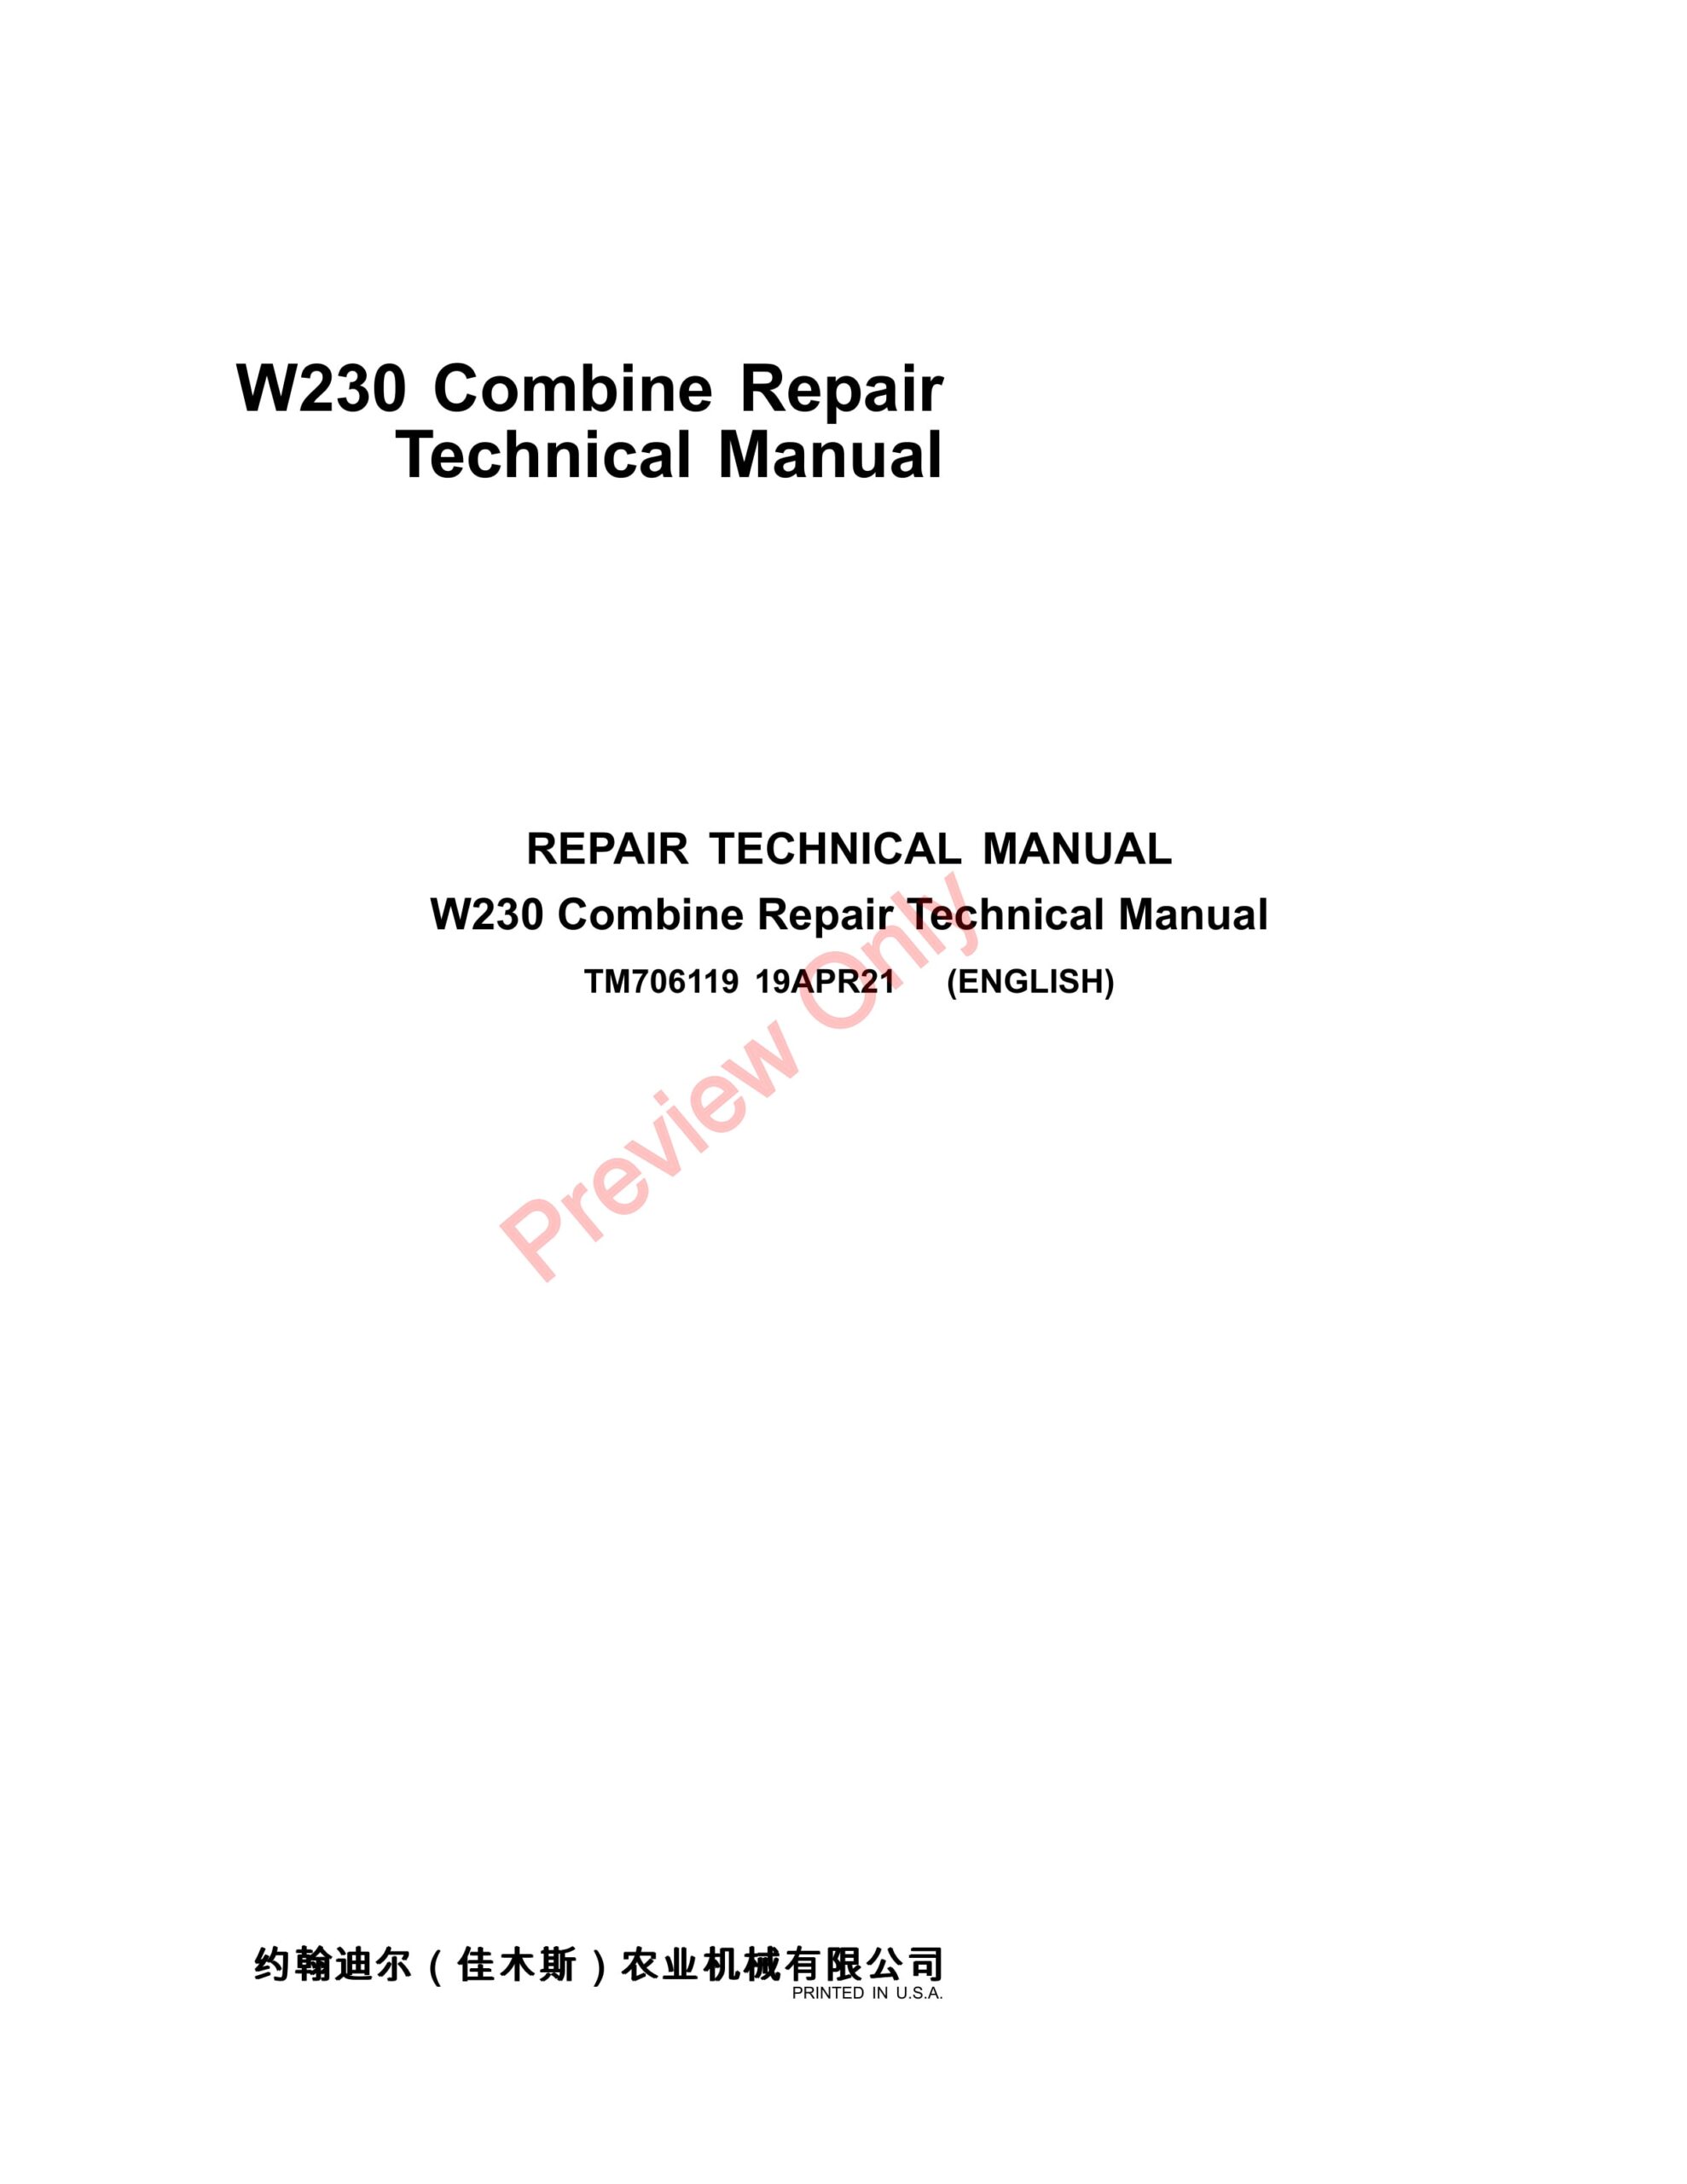 John Deere W230 Combine Repair Technical Manual TM706119 19APR21-1